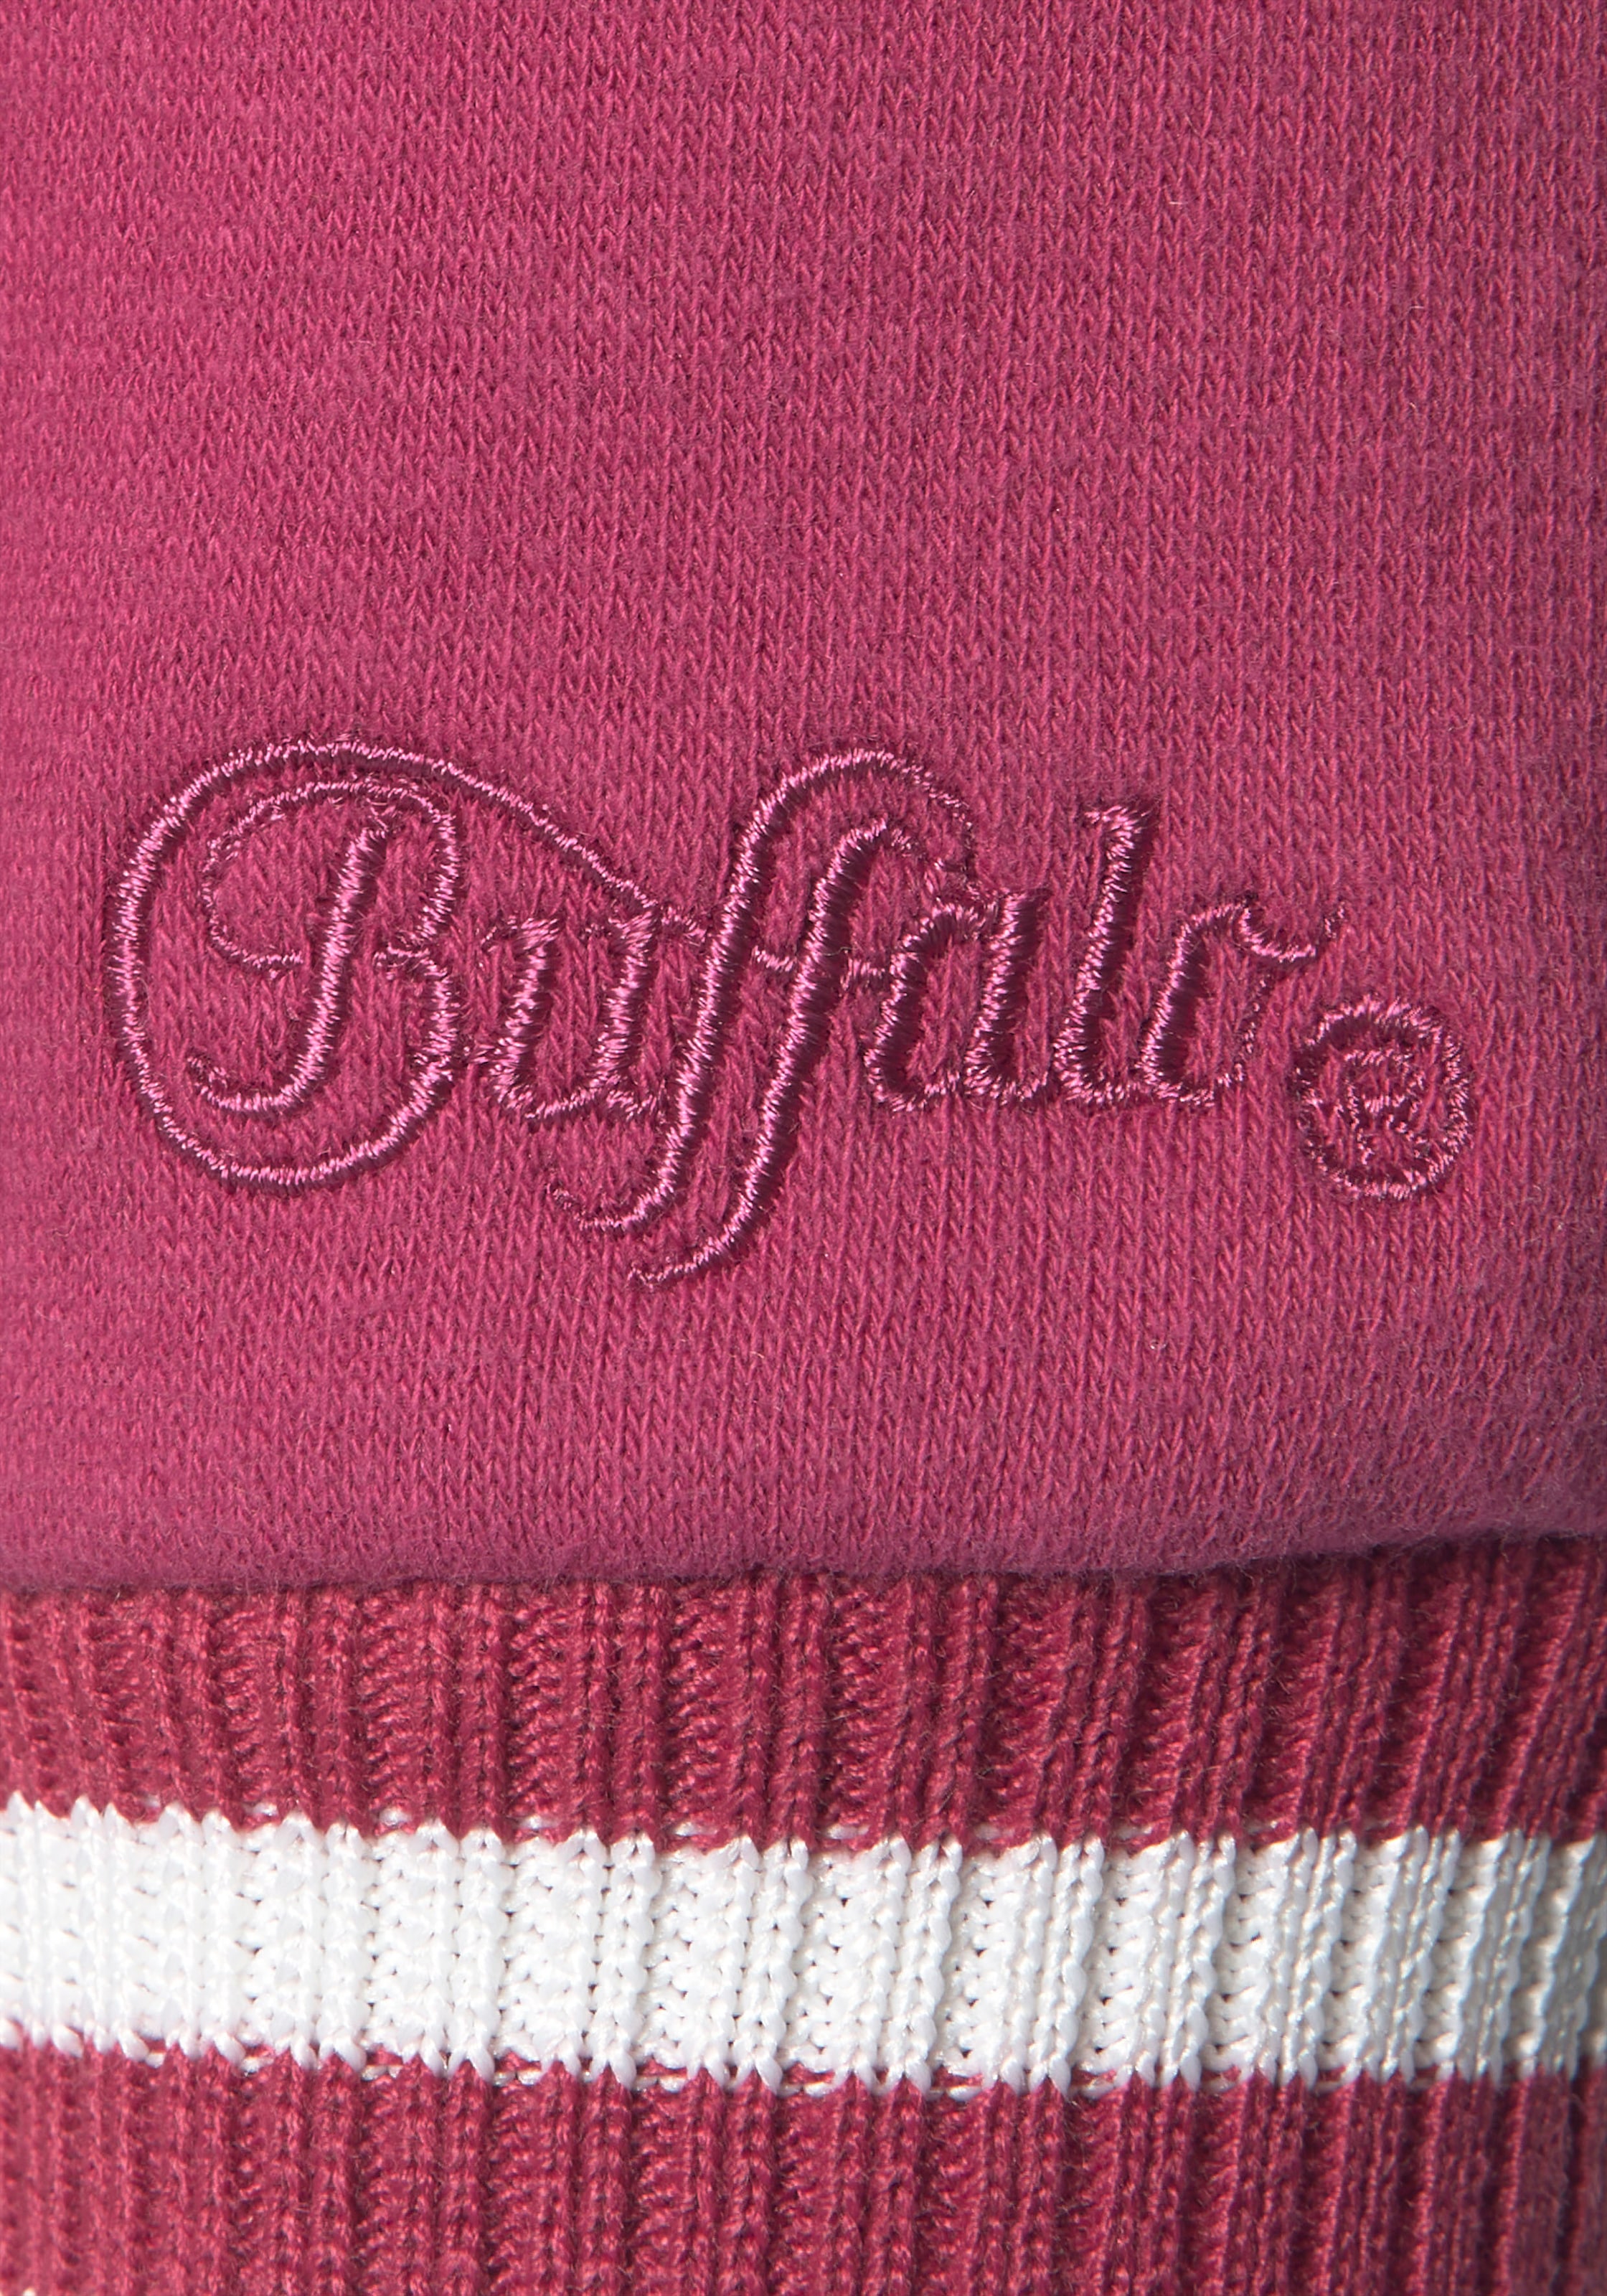 Buffalo Sweatshirt, mit Kontrast-Rippbündchen und Druck, Loungeanzug